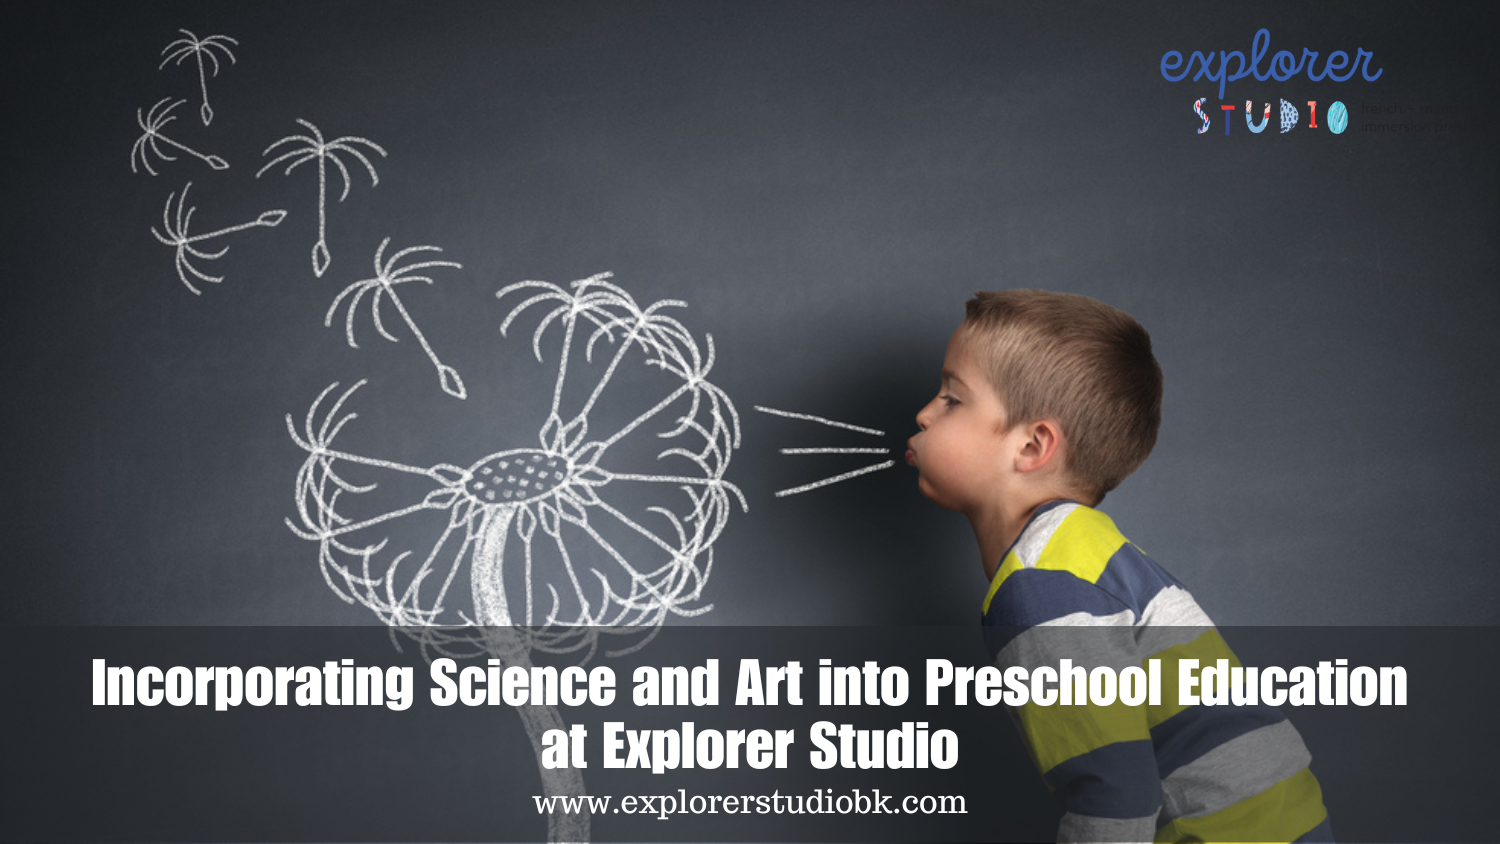 Preschoolers and Art